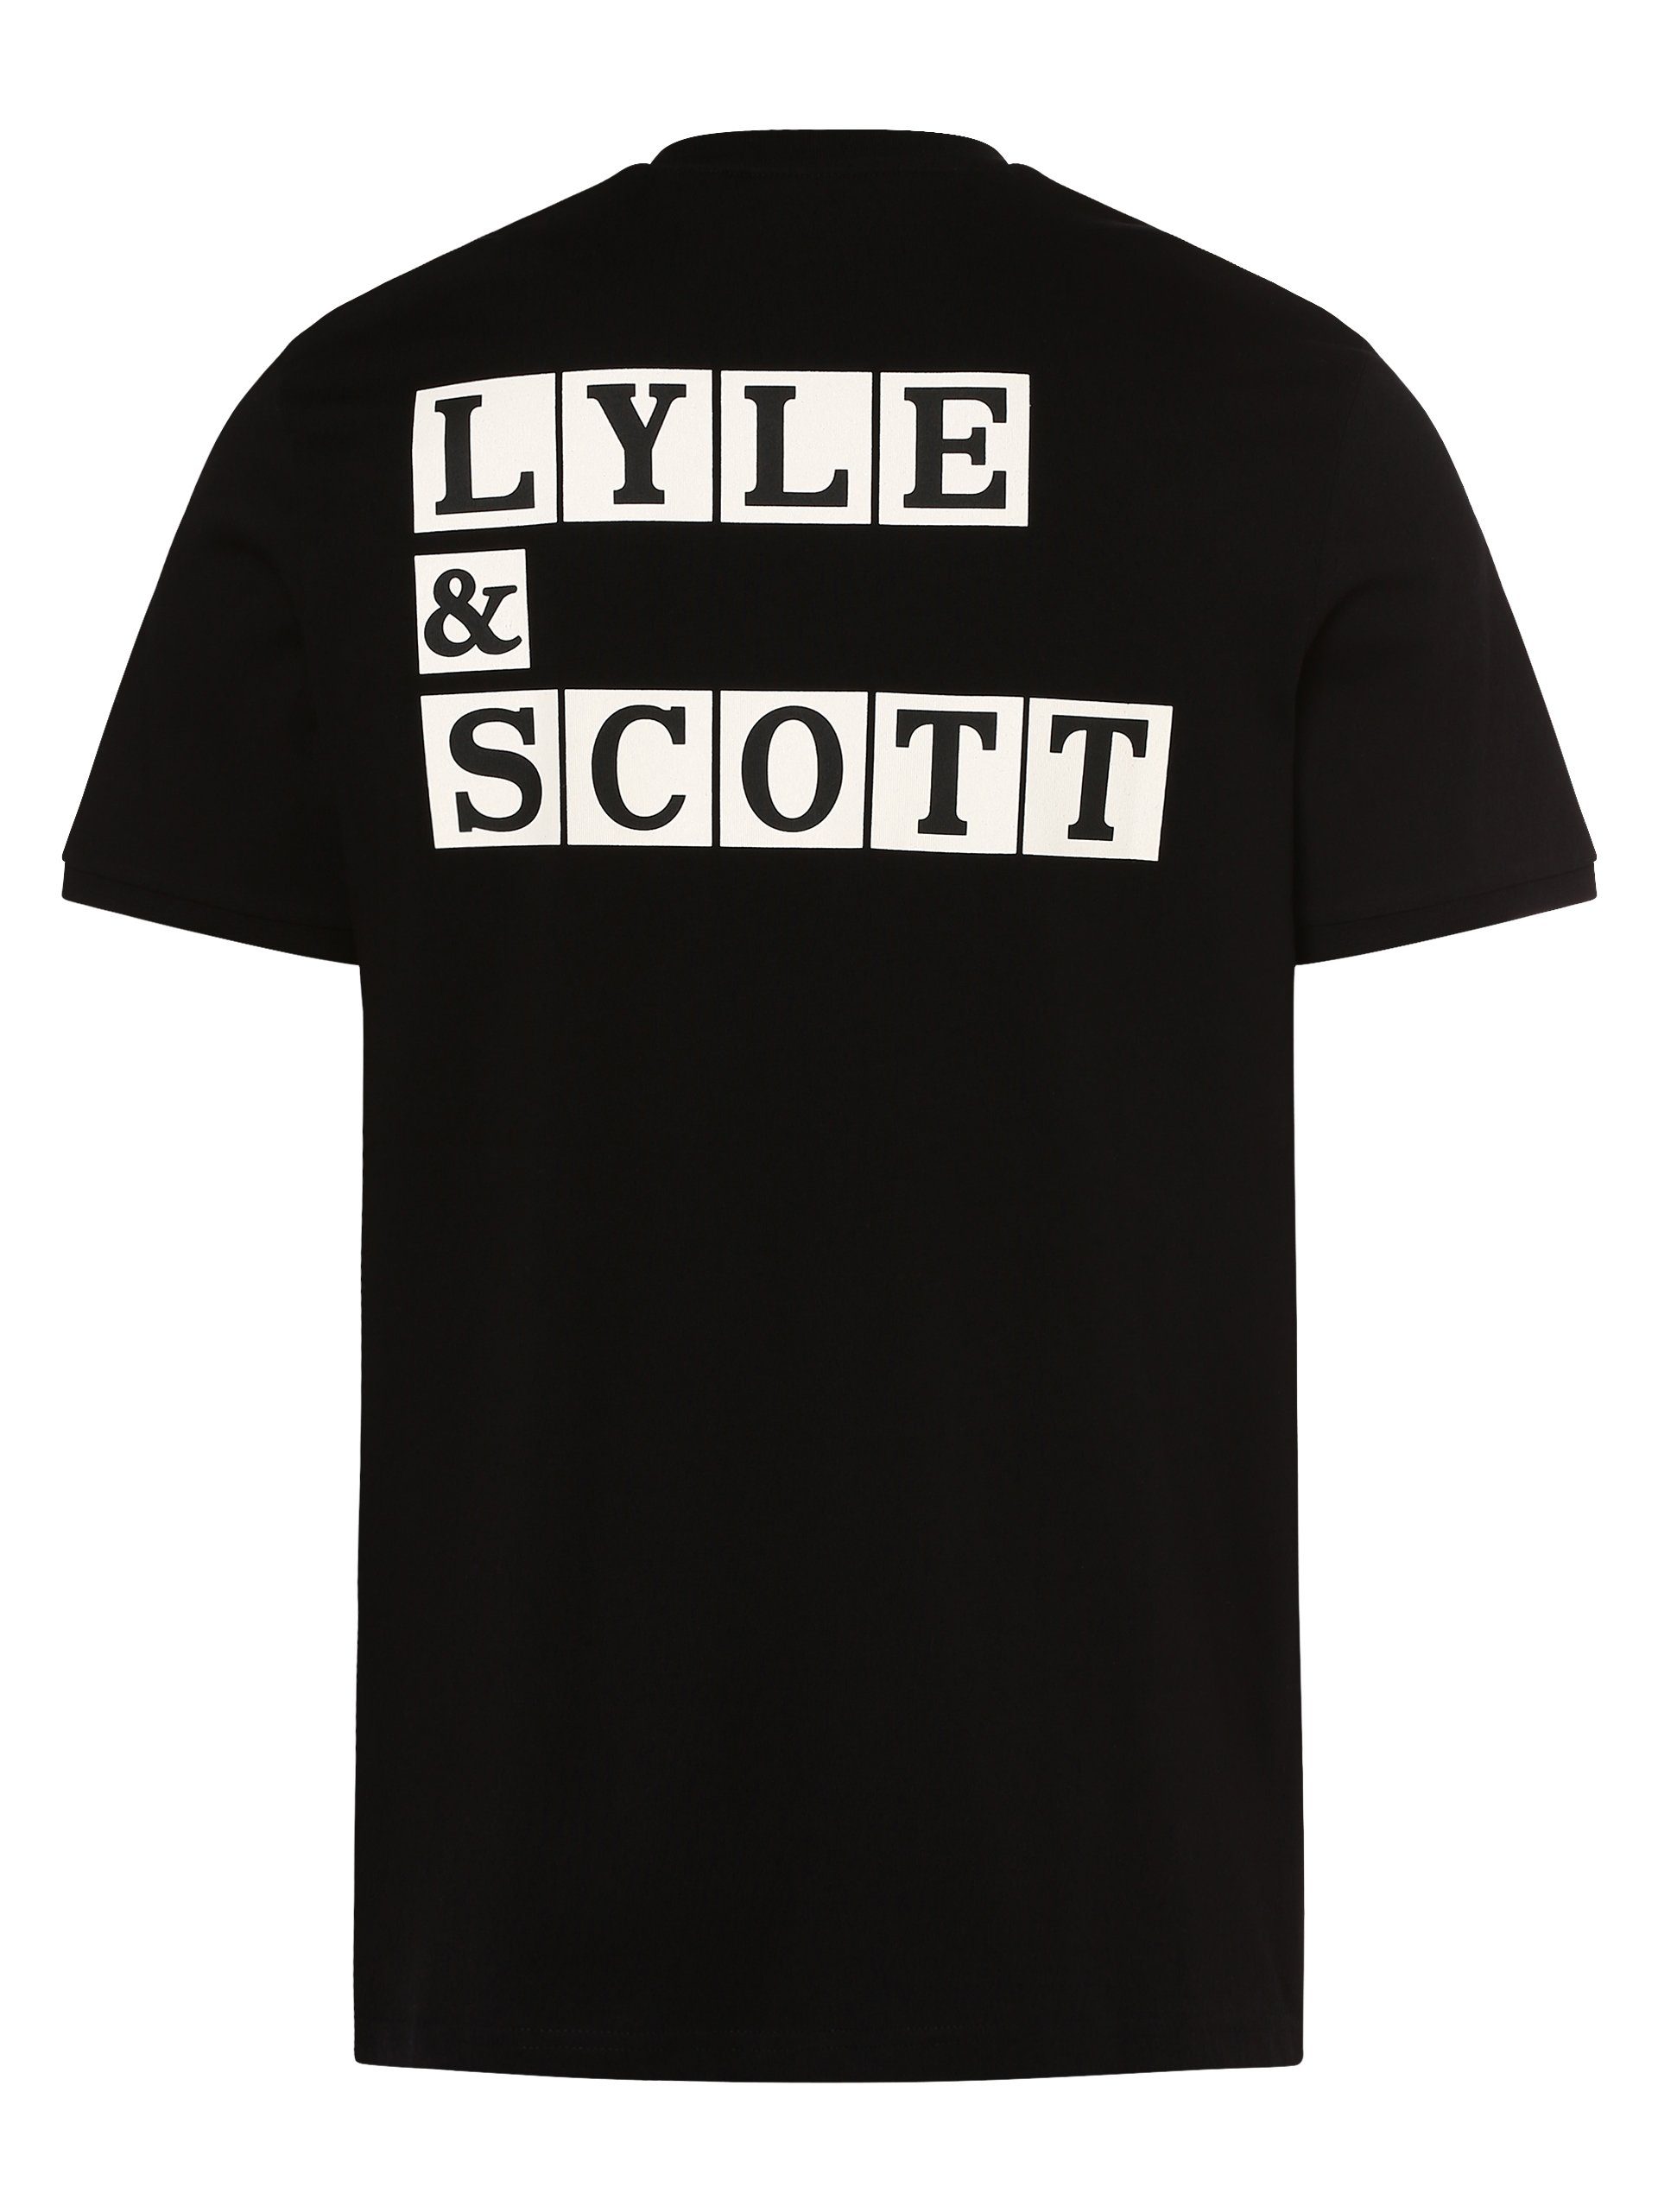 T-Shirt & schwarz Scott Lyle